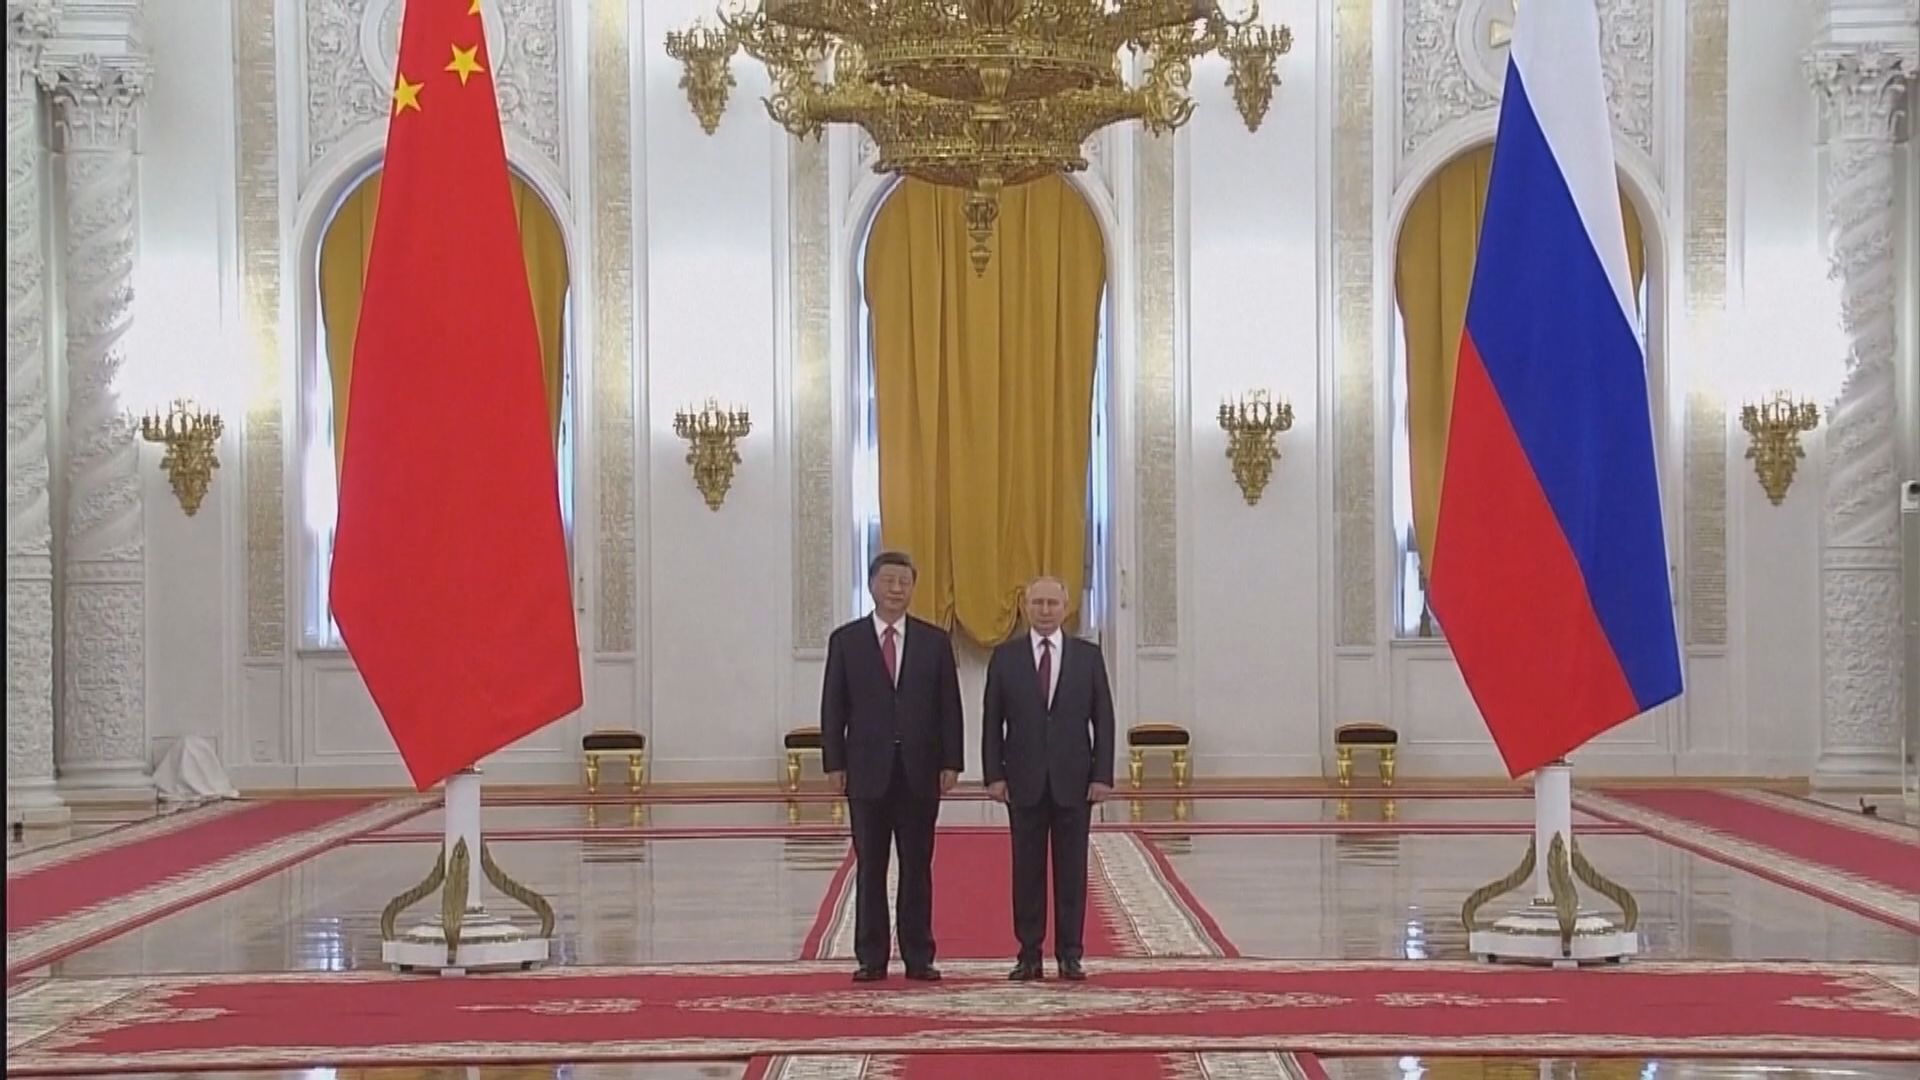 「一帶一路」高峰論壇在京舉行 習近平將跟普京會晤